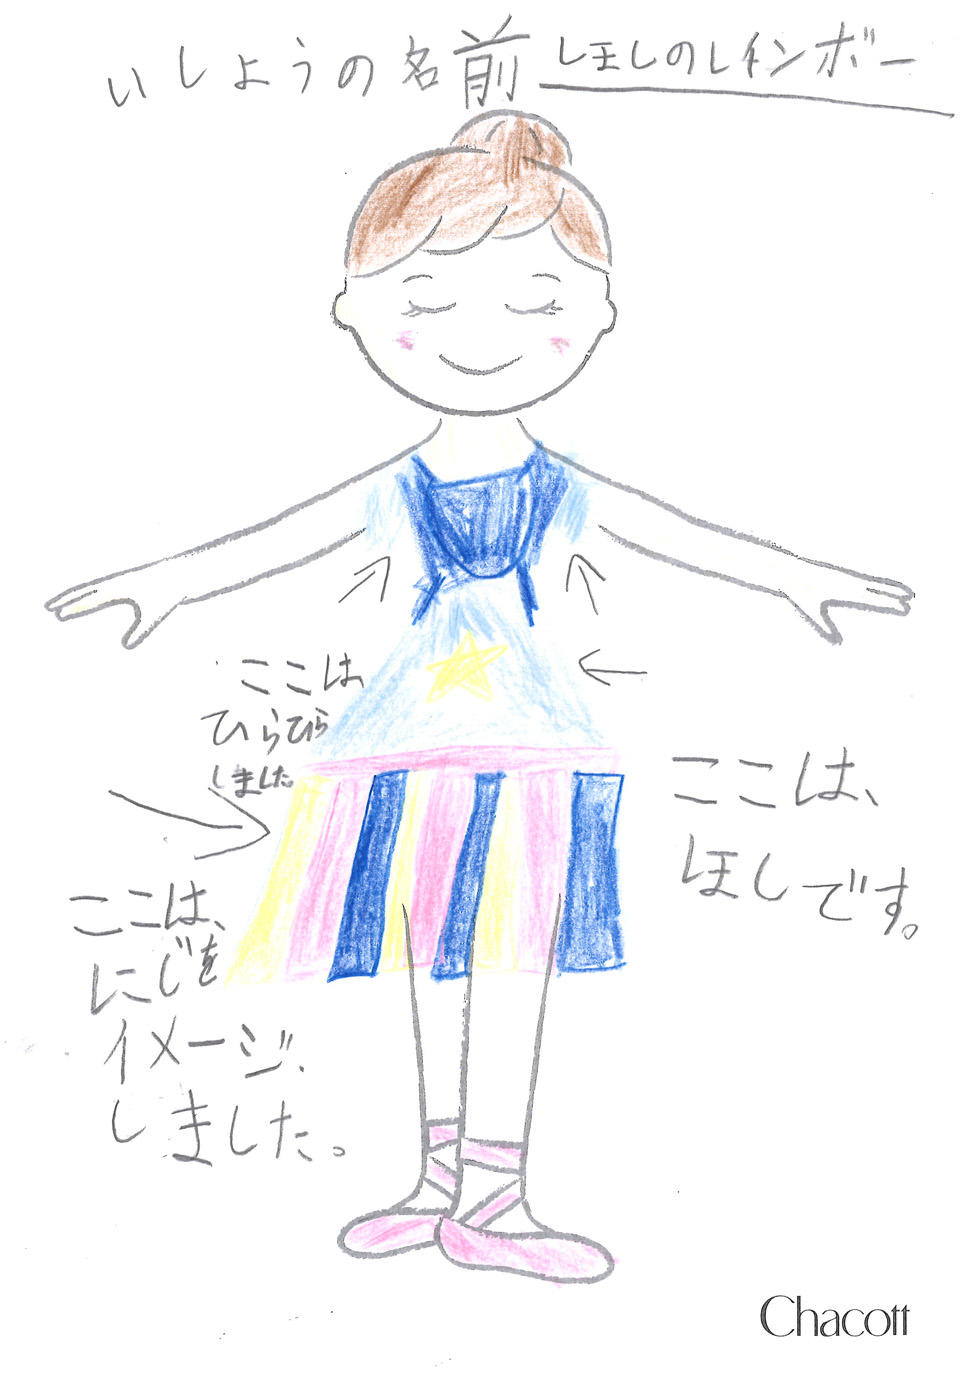 kanazawa_costume_design_2020_008.jpg